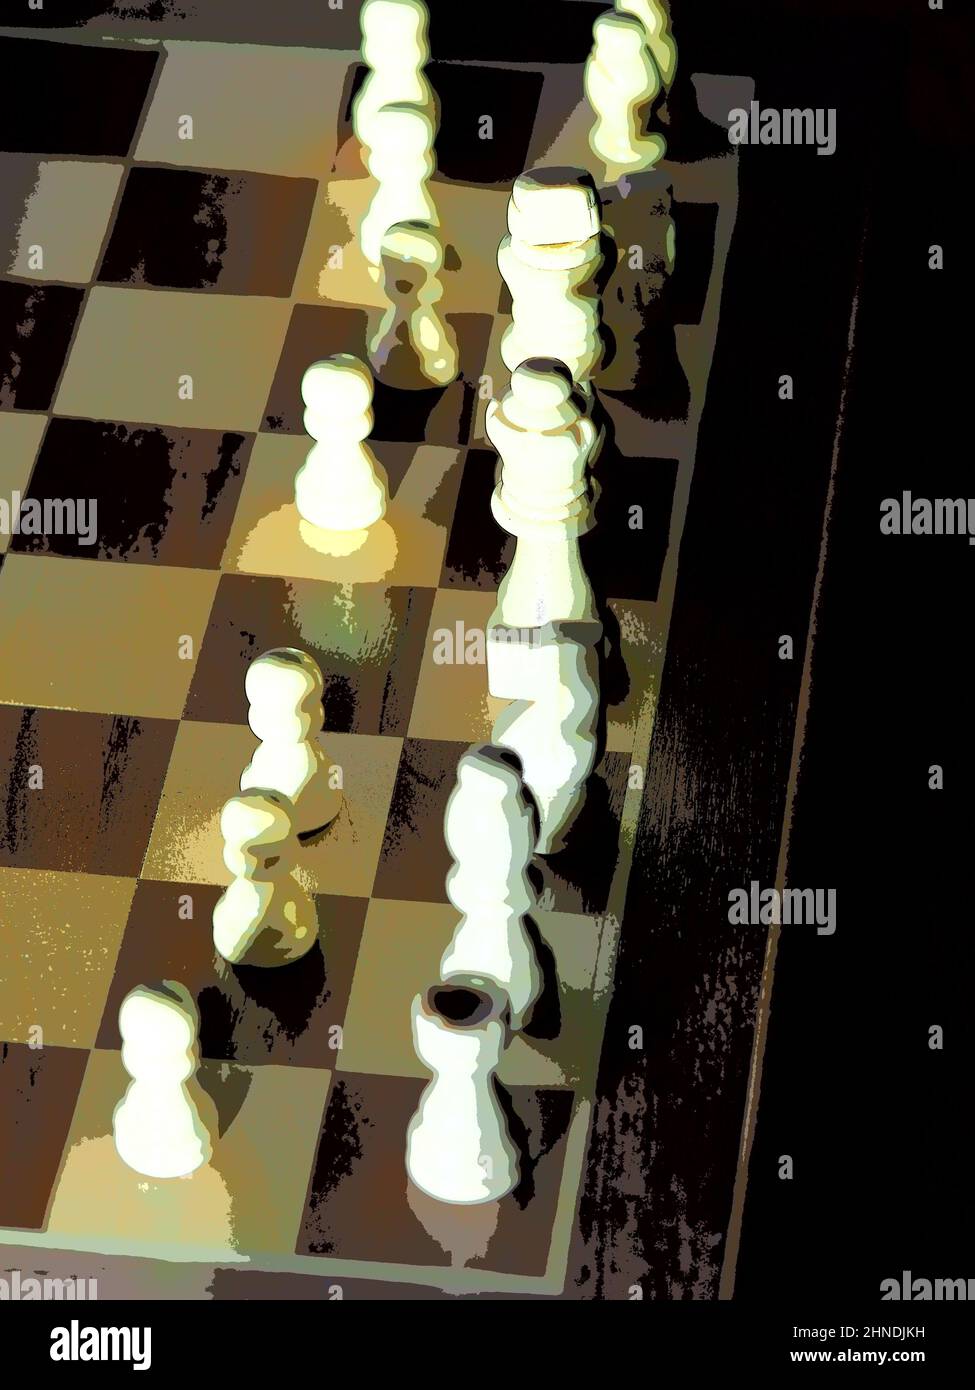 pièces d'échecs illuminées de façon spectaculaire sur une planche Banque D'Images